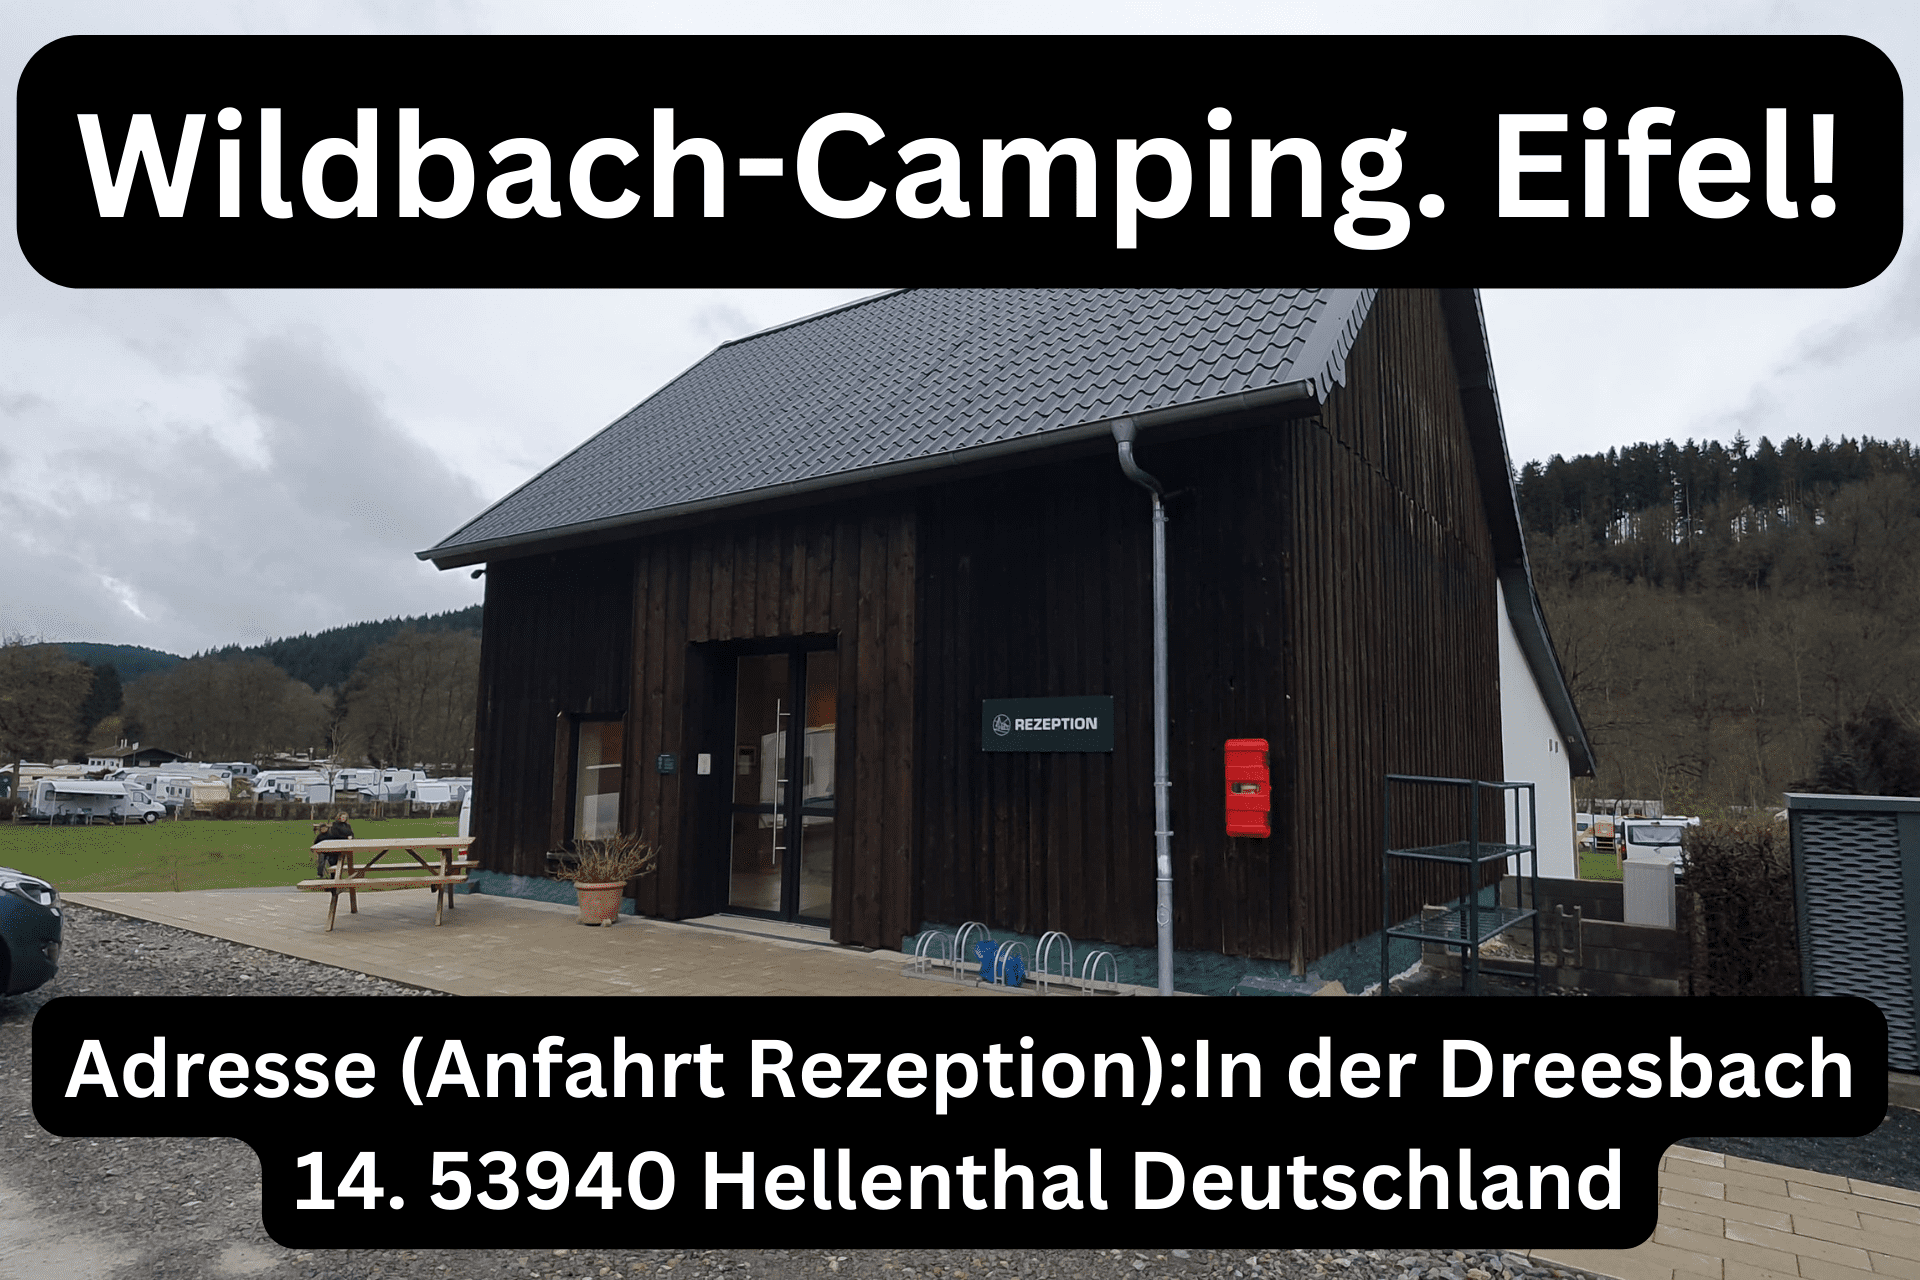 Neue Rezeption Wildbach Camping Eifel. Neue Anfahrt Anschrift